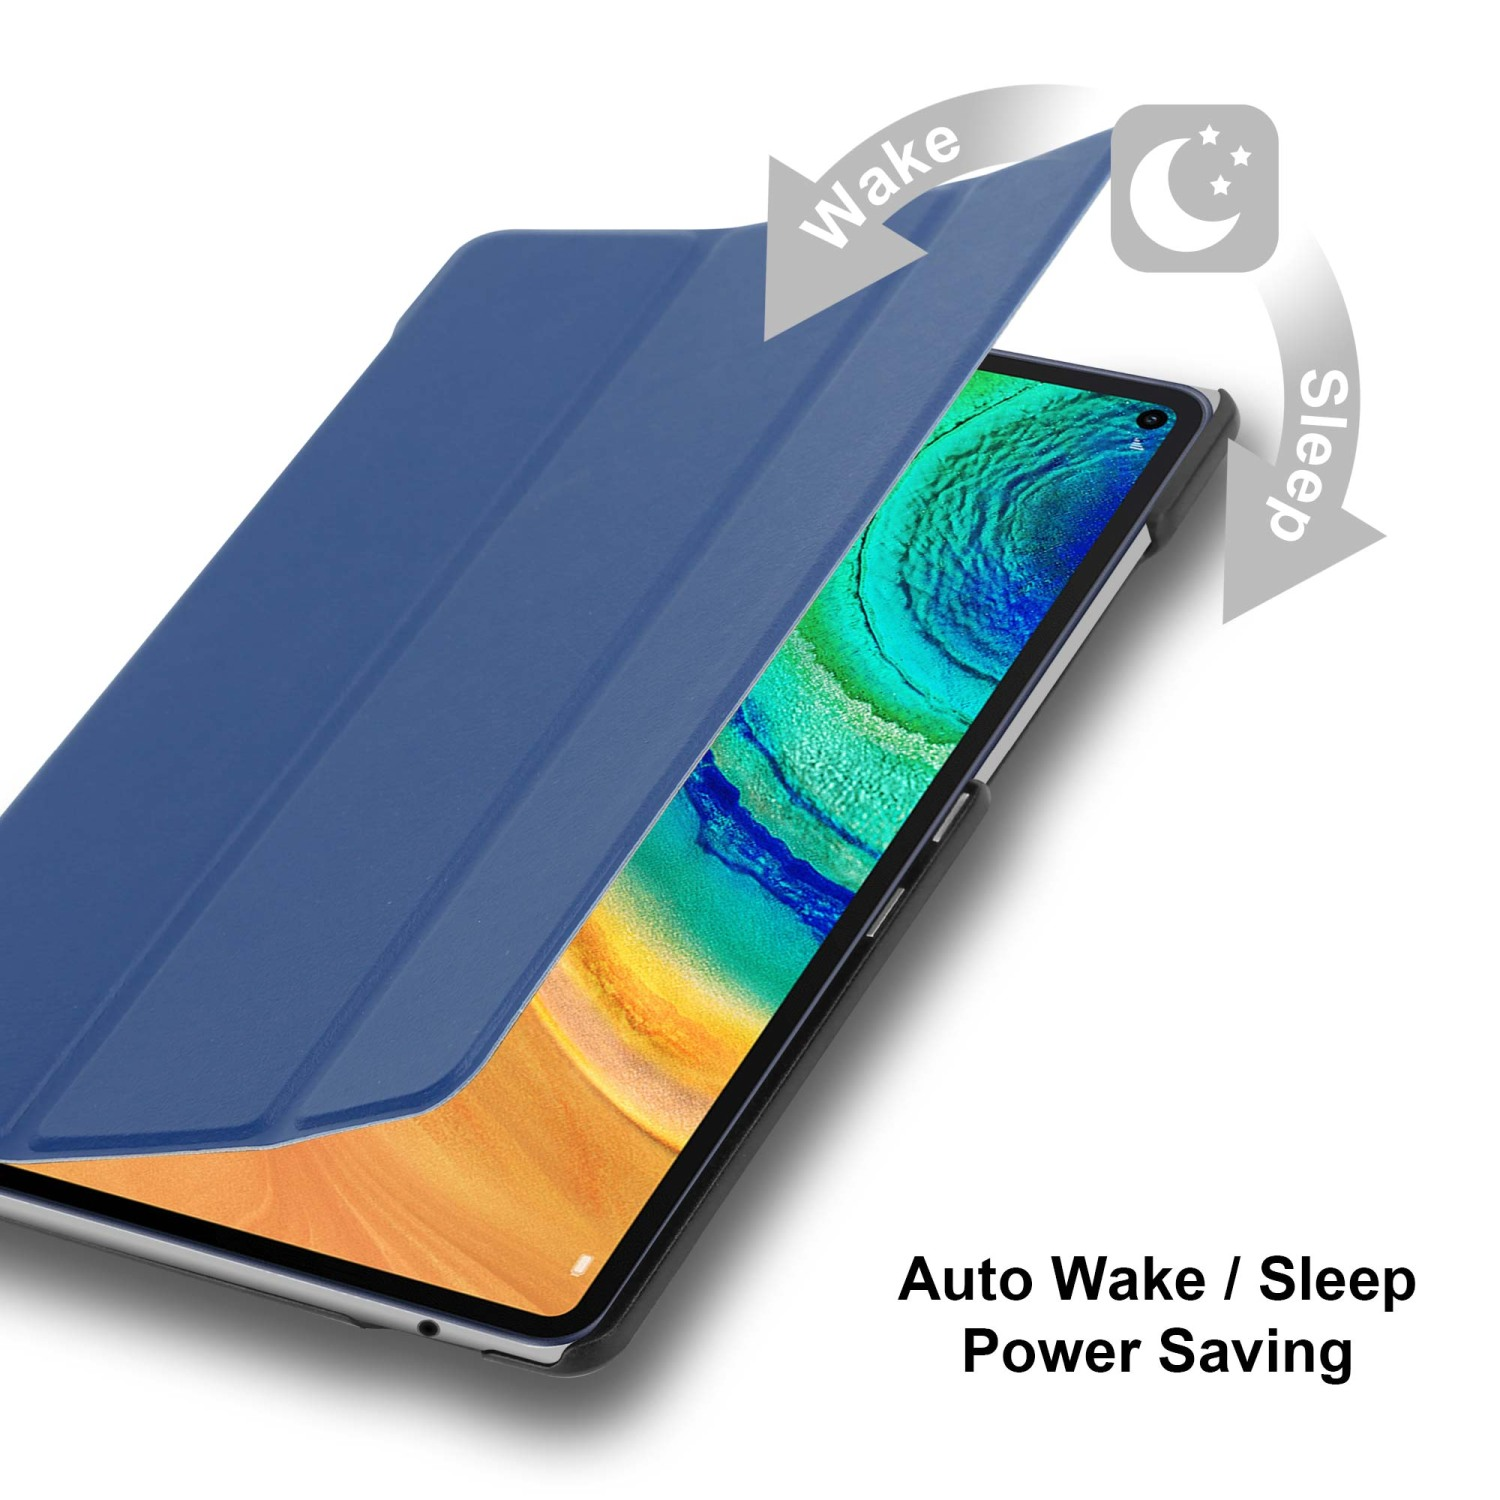 Standfunktion Huawei BLAU für Auto JERSEY Tablet DUNKEL Wake Tablethülle CADORABO Bookcover Kunstleder, Hülle Up